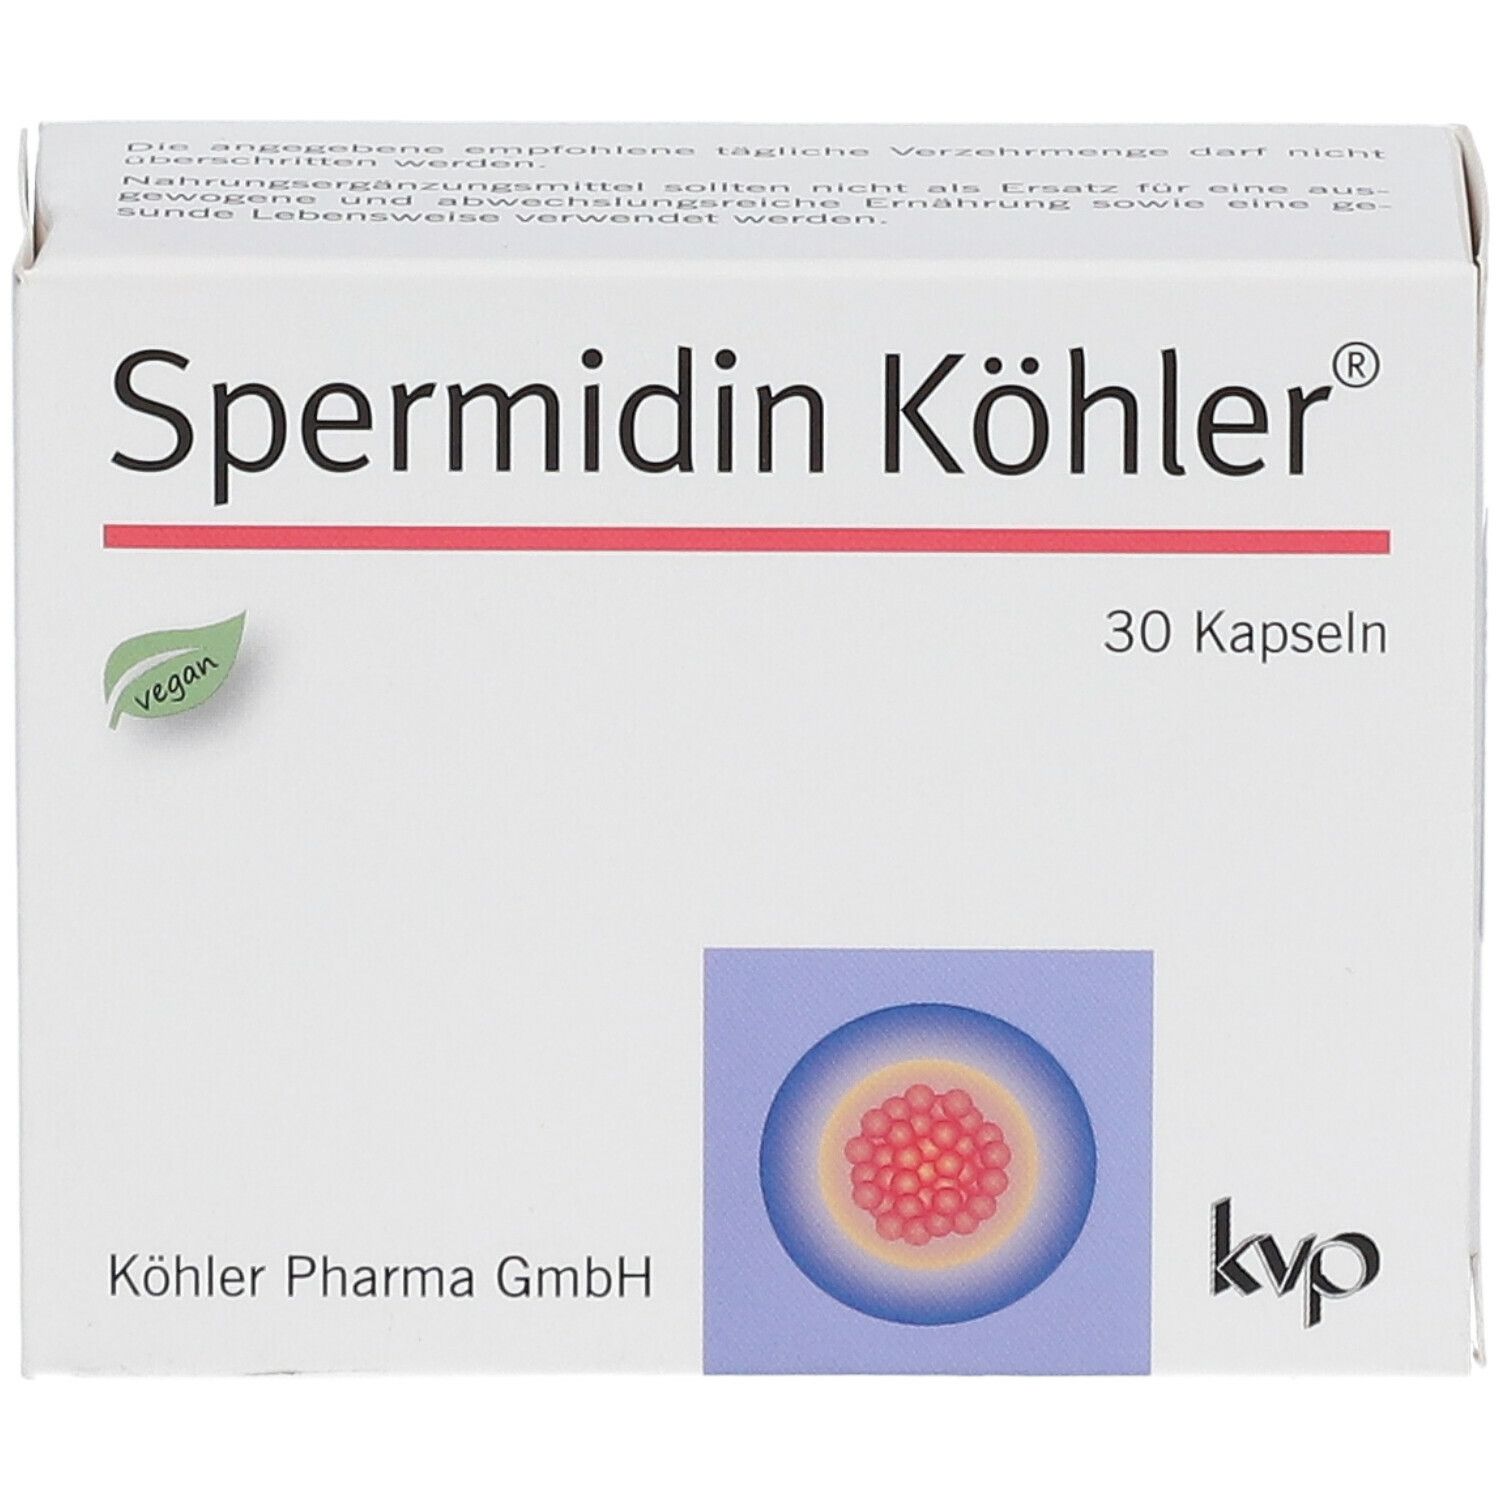 Spermidin Köhler®